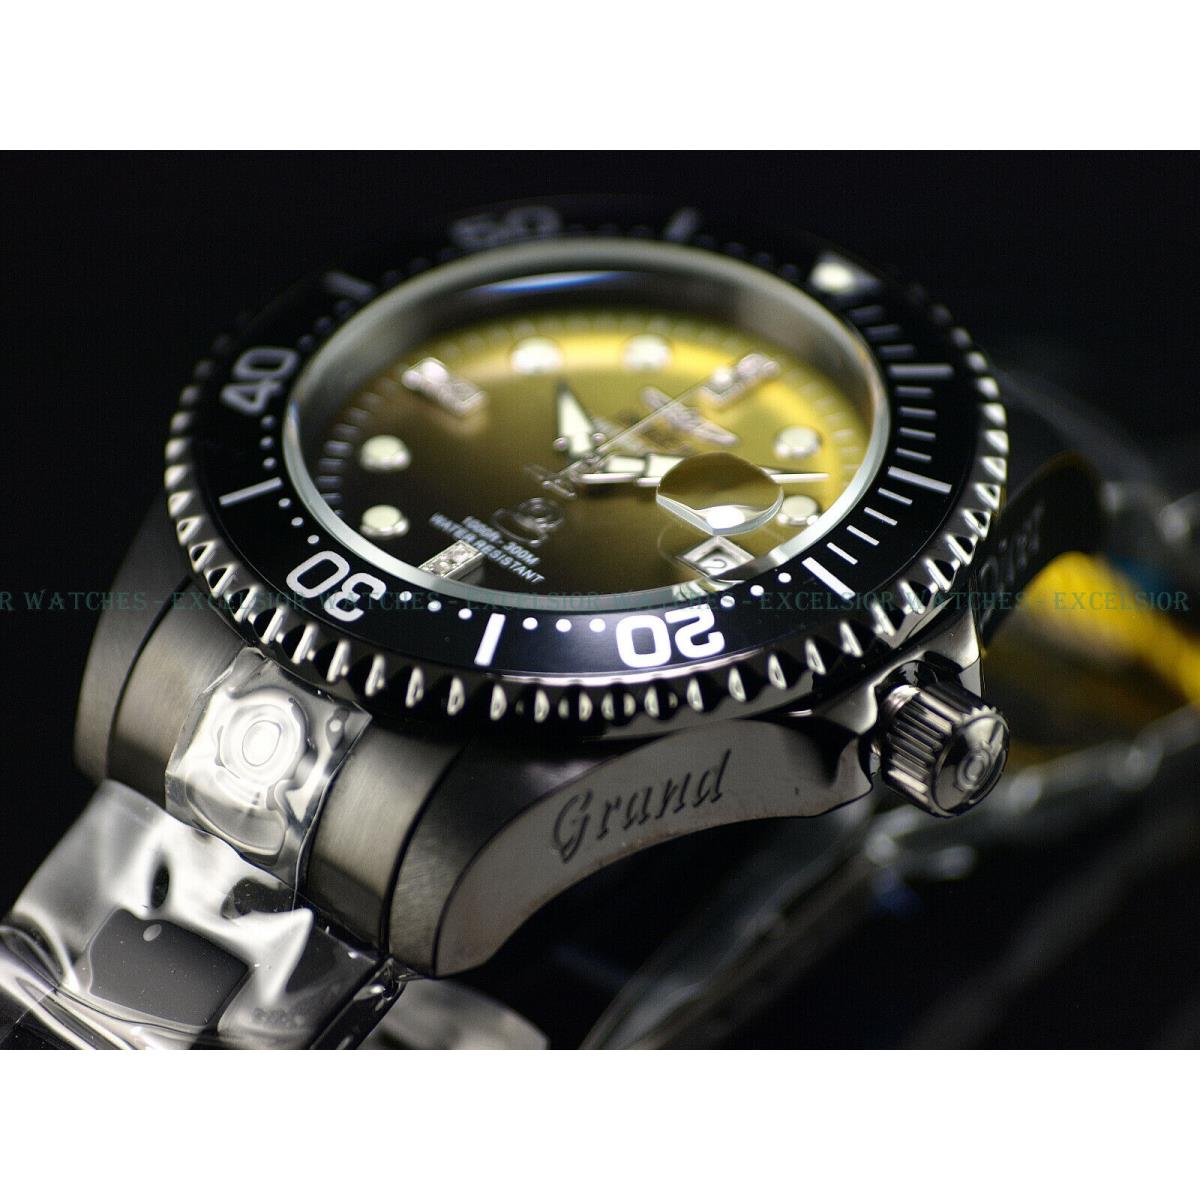 Invicta watch Diamond Grand Diver - Multicolor Dial, Black Band, Black Bezel